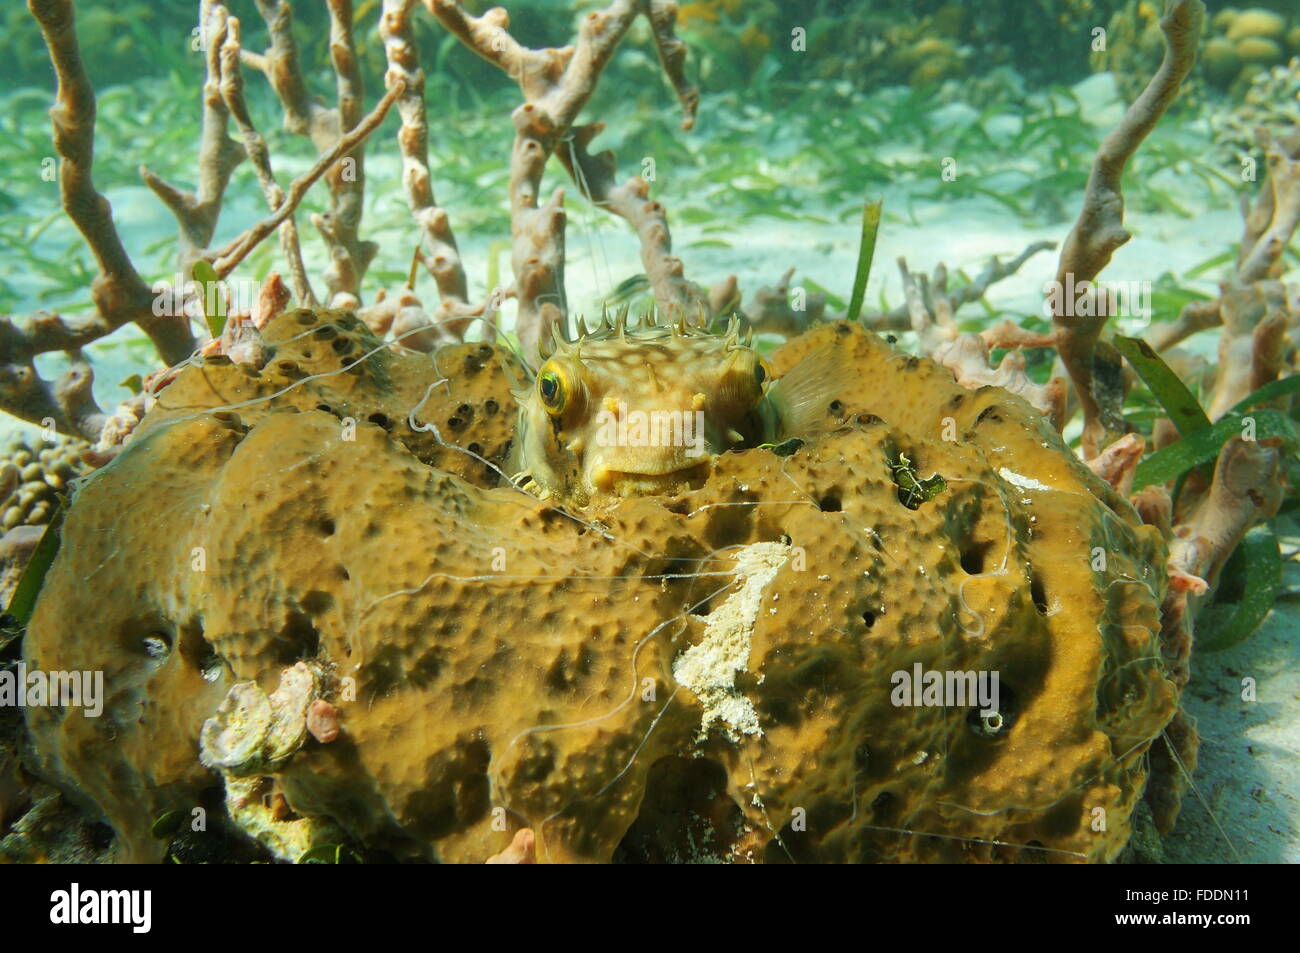 La vie marine sous-marine, bridée, Chilomycterus antennatus Burrfish, caché sur une éponge, mer des Caraïbes Banque D'Images